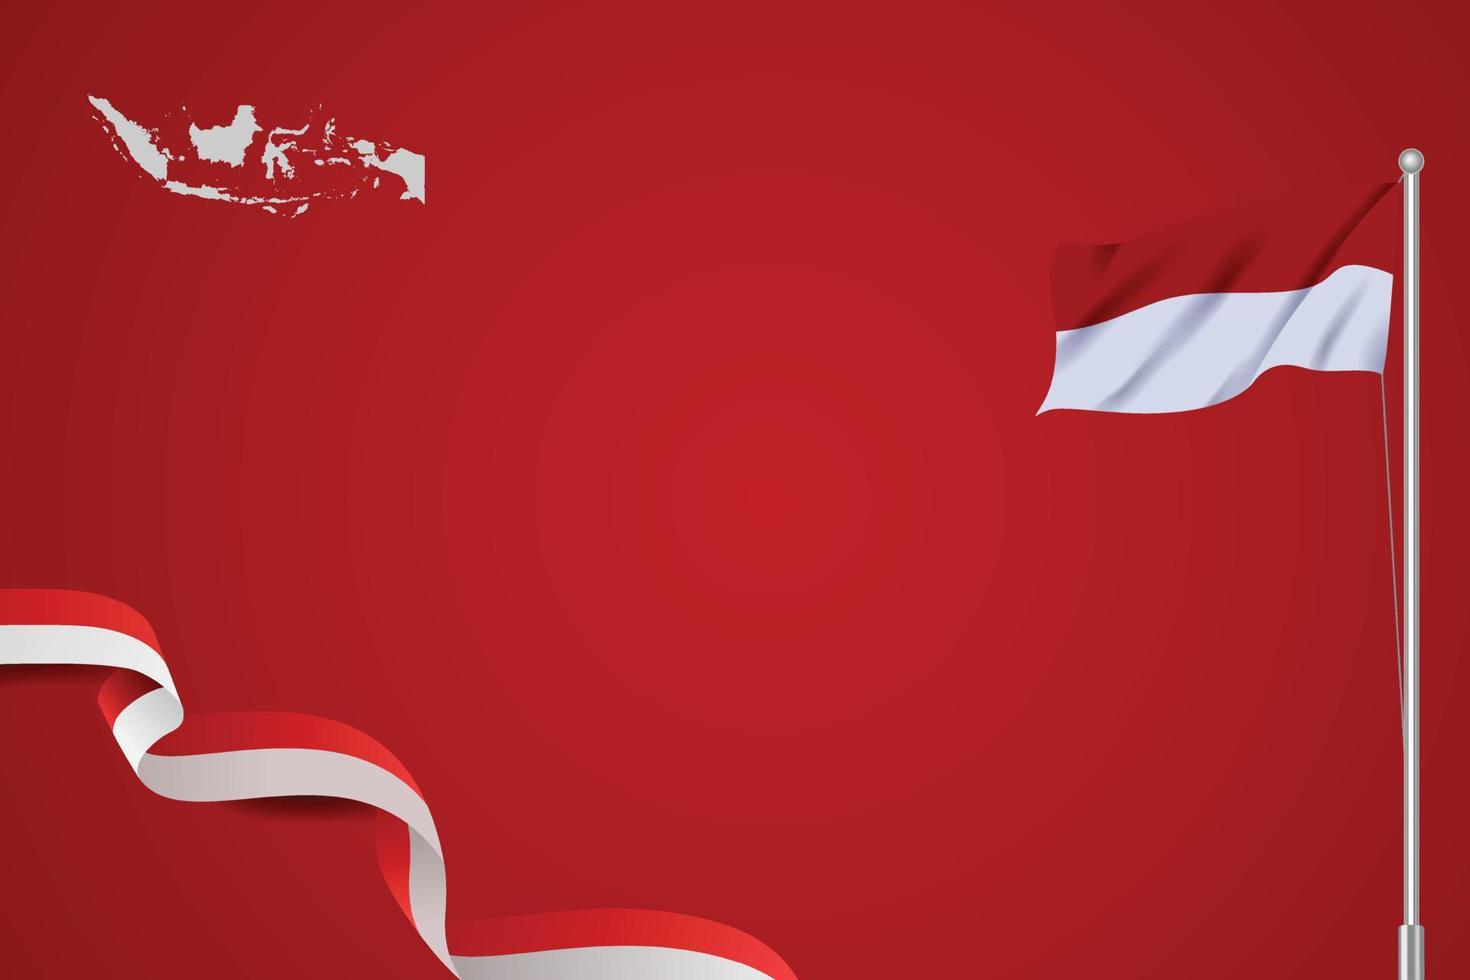 estilo de fundo vermelho com bandeira indonésia tremulando fita realista, vermelha e branca e mapa da Indonésia. vetor